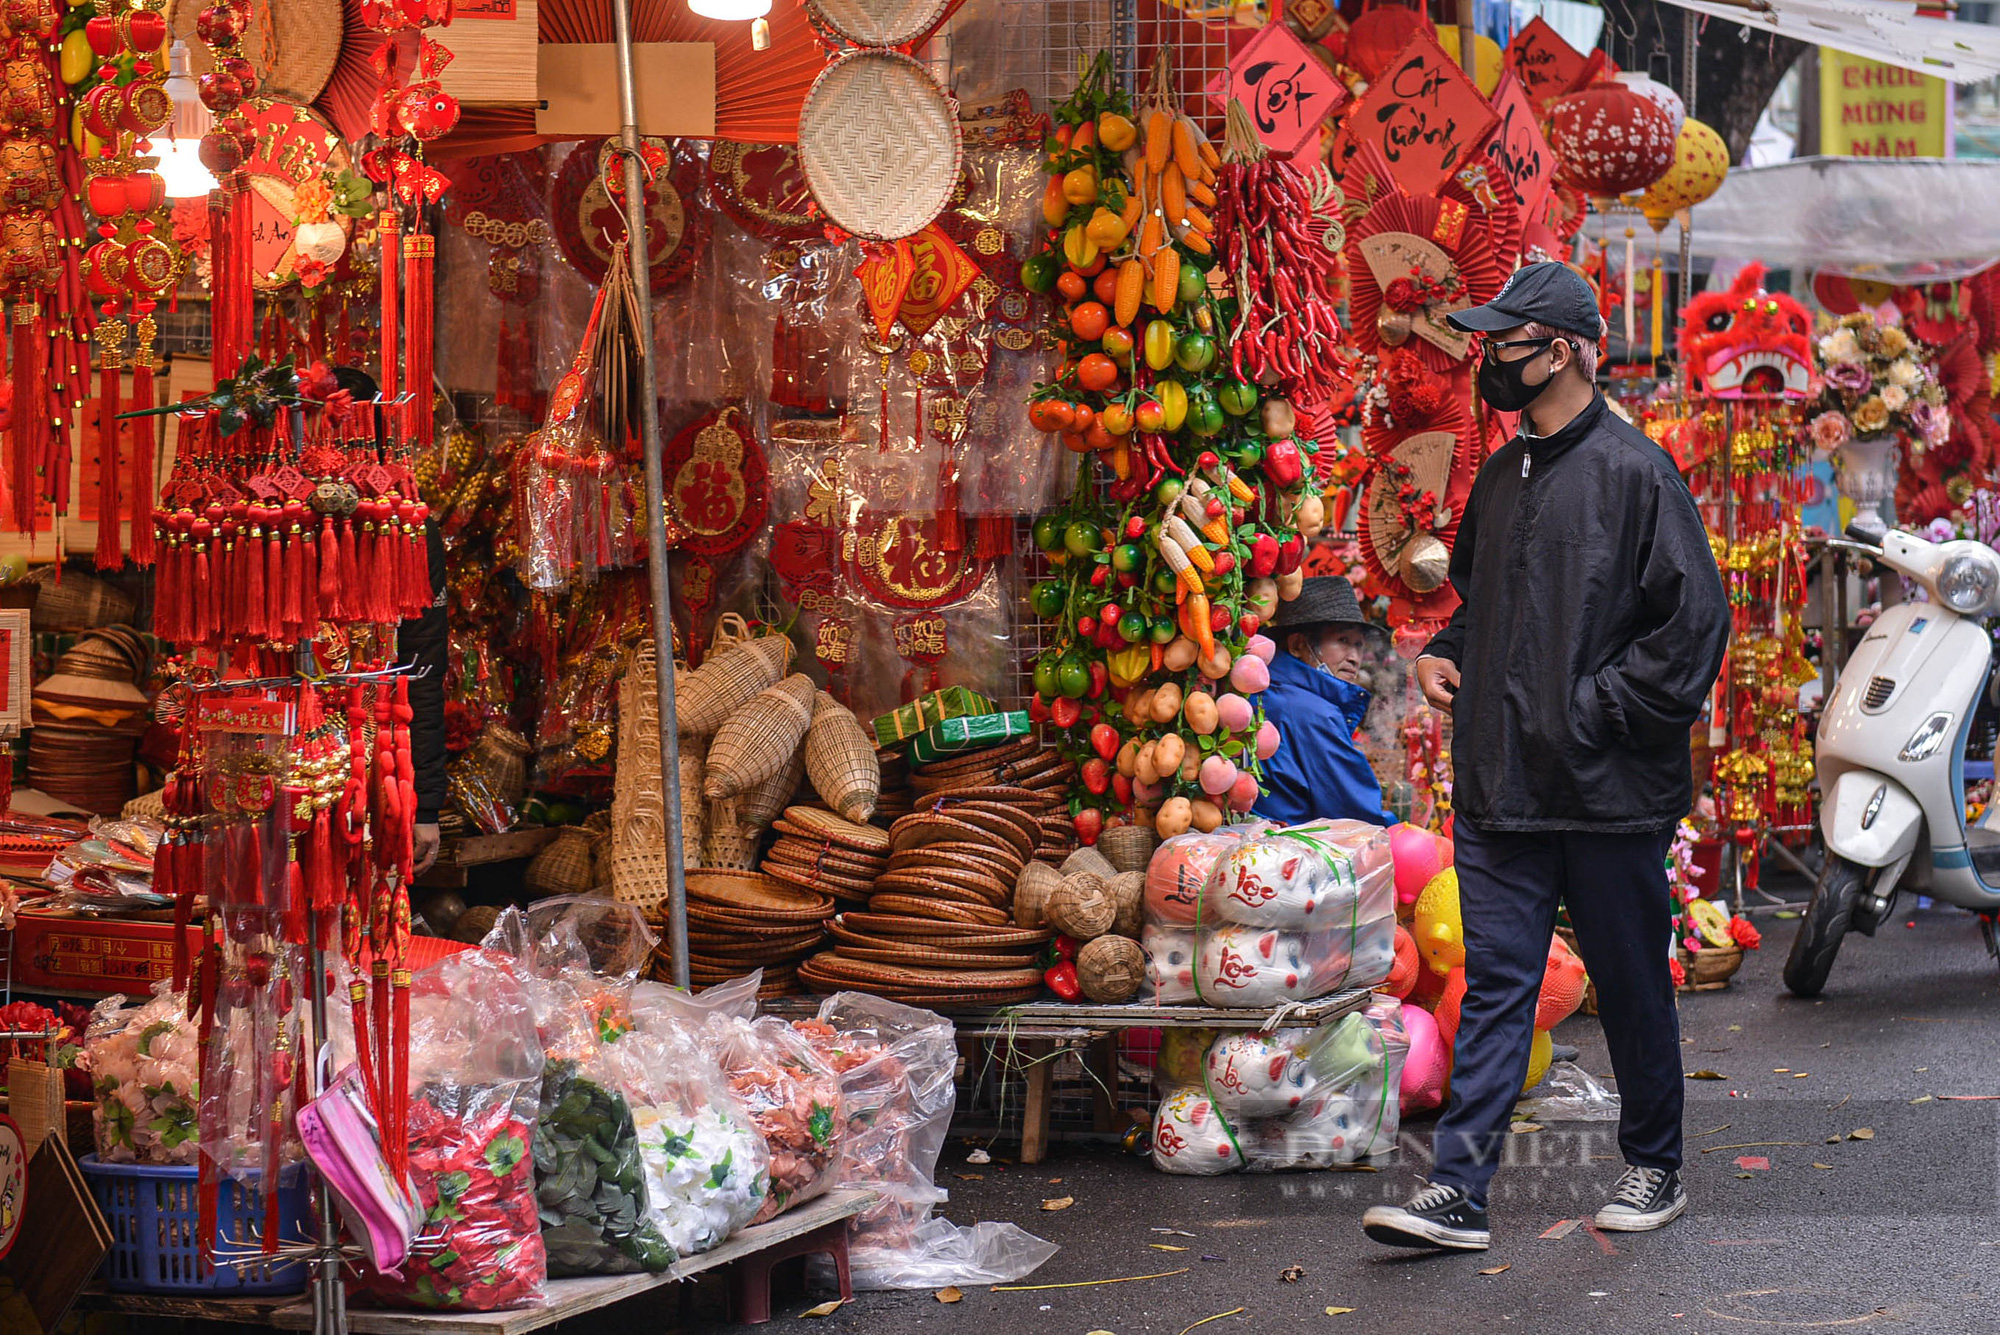 Chợ hoa truyền thống nổi tiếng nhất Hà Nội đìu hiu khách ngày đầu khai mạc - Ảnh 9.